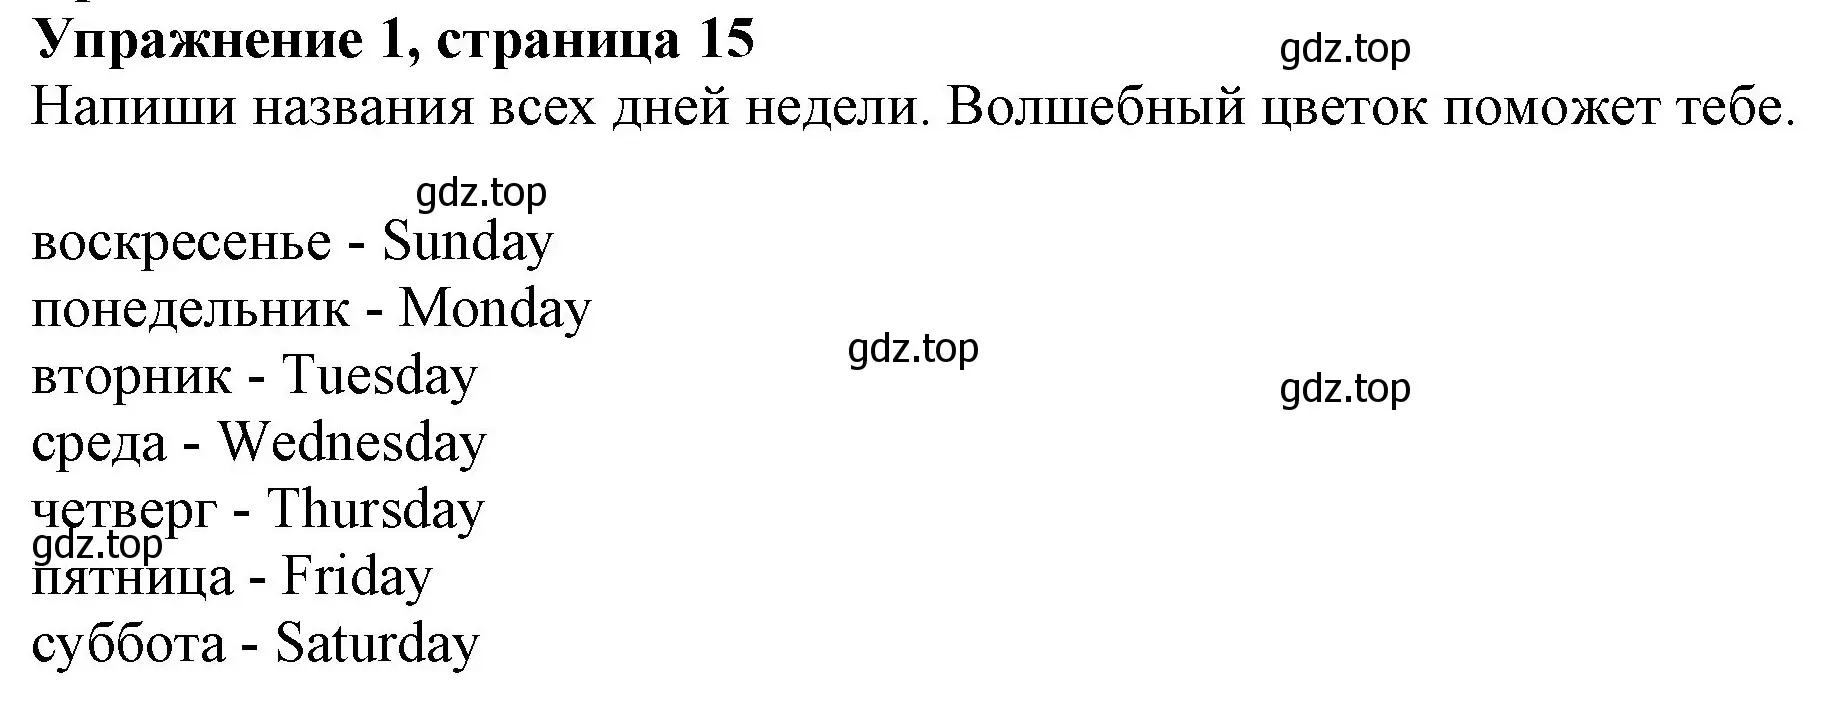 Решение номер 1 (страница 15) гдз по английскому языку 3 класс Биболетова, Денисенко, рабочая тетрадь